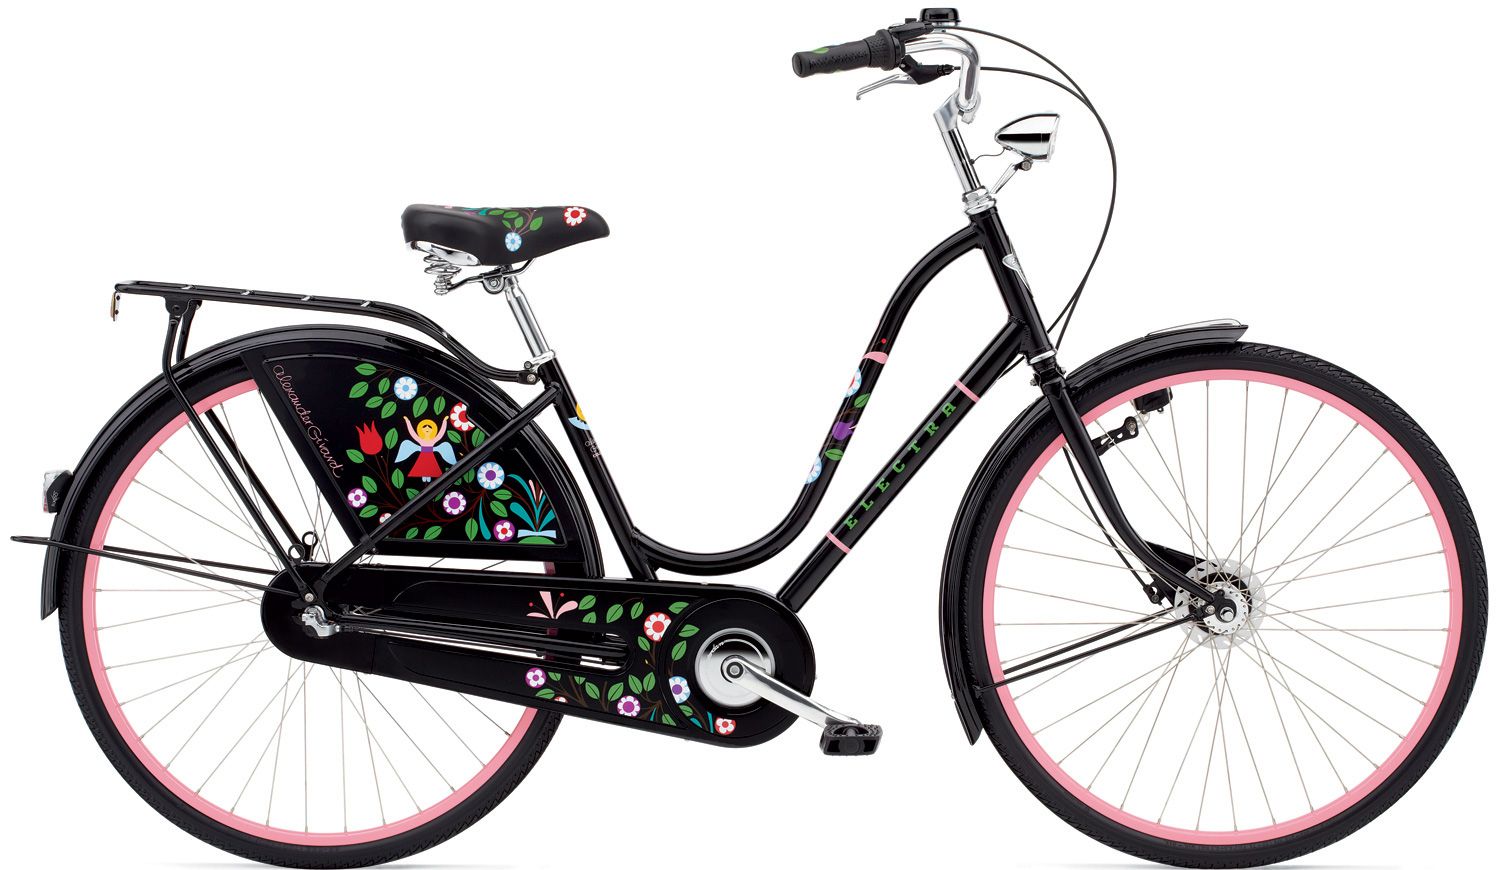  Отзывы о Трехколесный детский велосипед Electra Amsterdam Girard 3i Ladies 2017